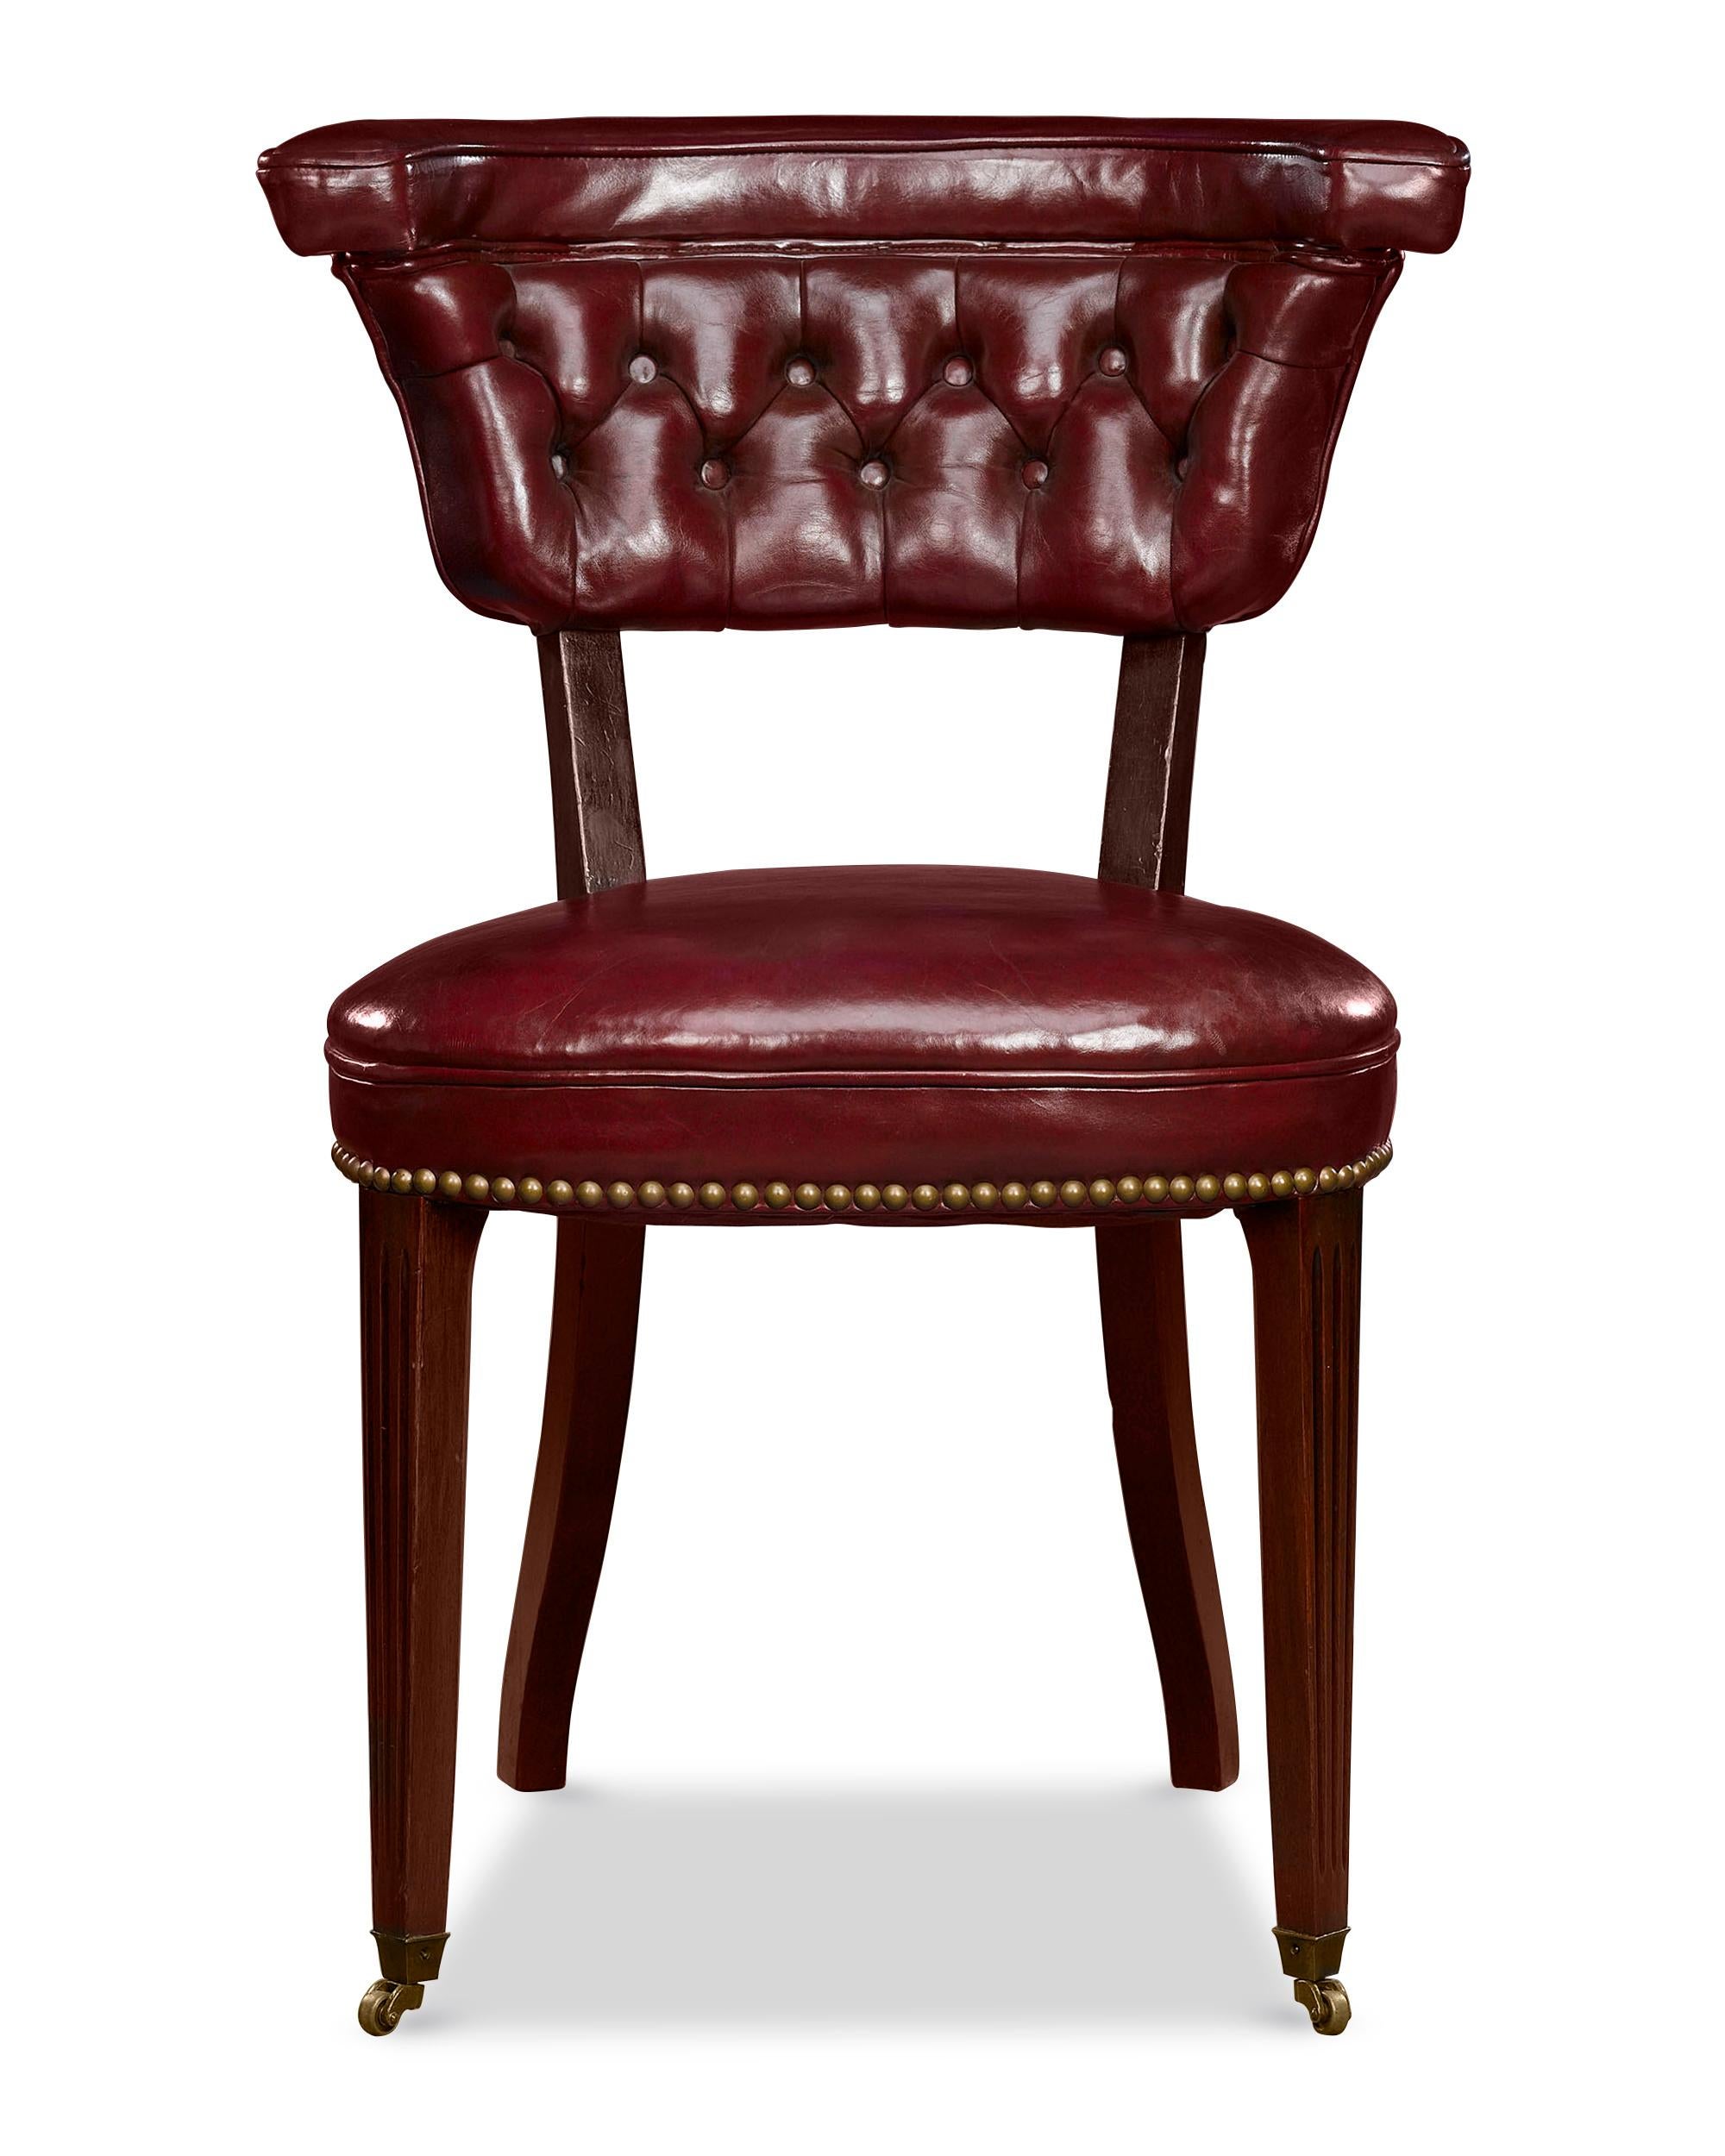 Ein schöner und seltener Lesesessel im georgianischen Stil, der fachmännisch aus Mahagoni gefertigt wurde. Mit seiner hohen, breiten Rückenlehne, die sich zum Sitz hin verjüngt, ist der Stuhl so konstruiert, dass der Leser rückwärts auf dem Stuhl